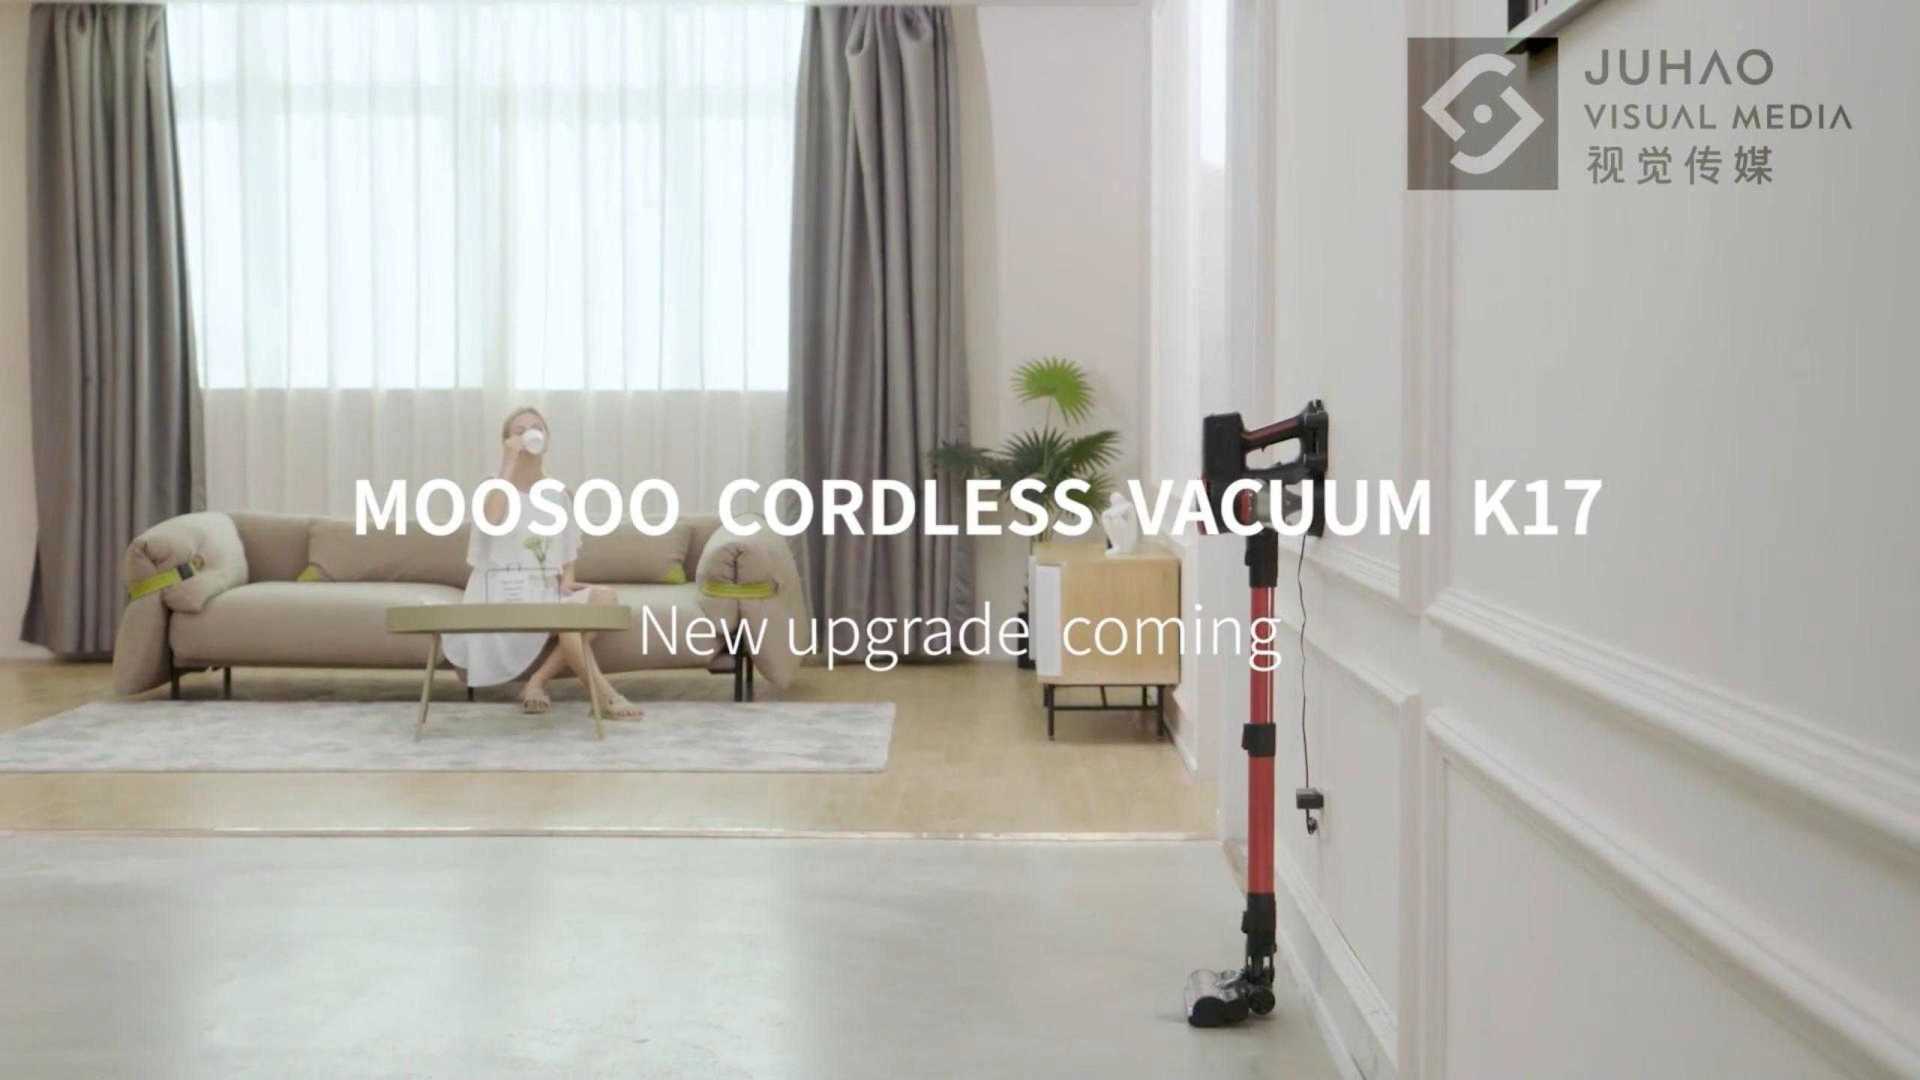 电商产品视频 亚马逊视频  智能家居 扫地机  吸尘器3D动画  广告视频